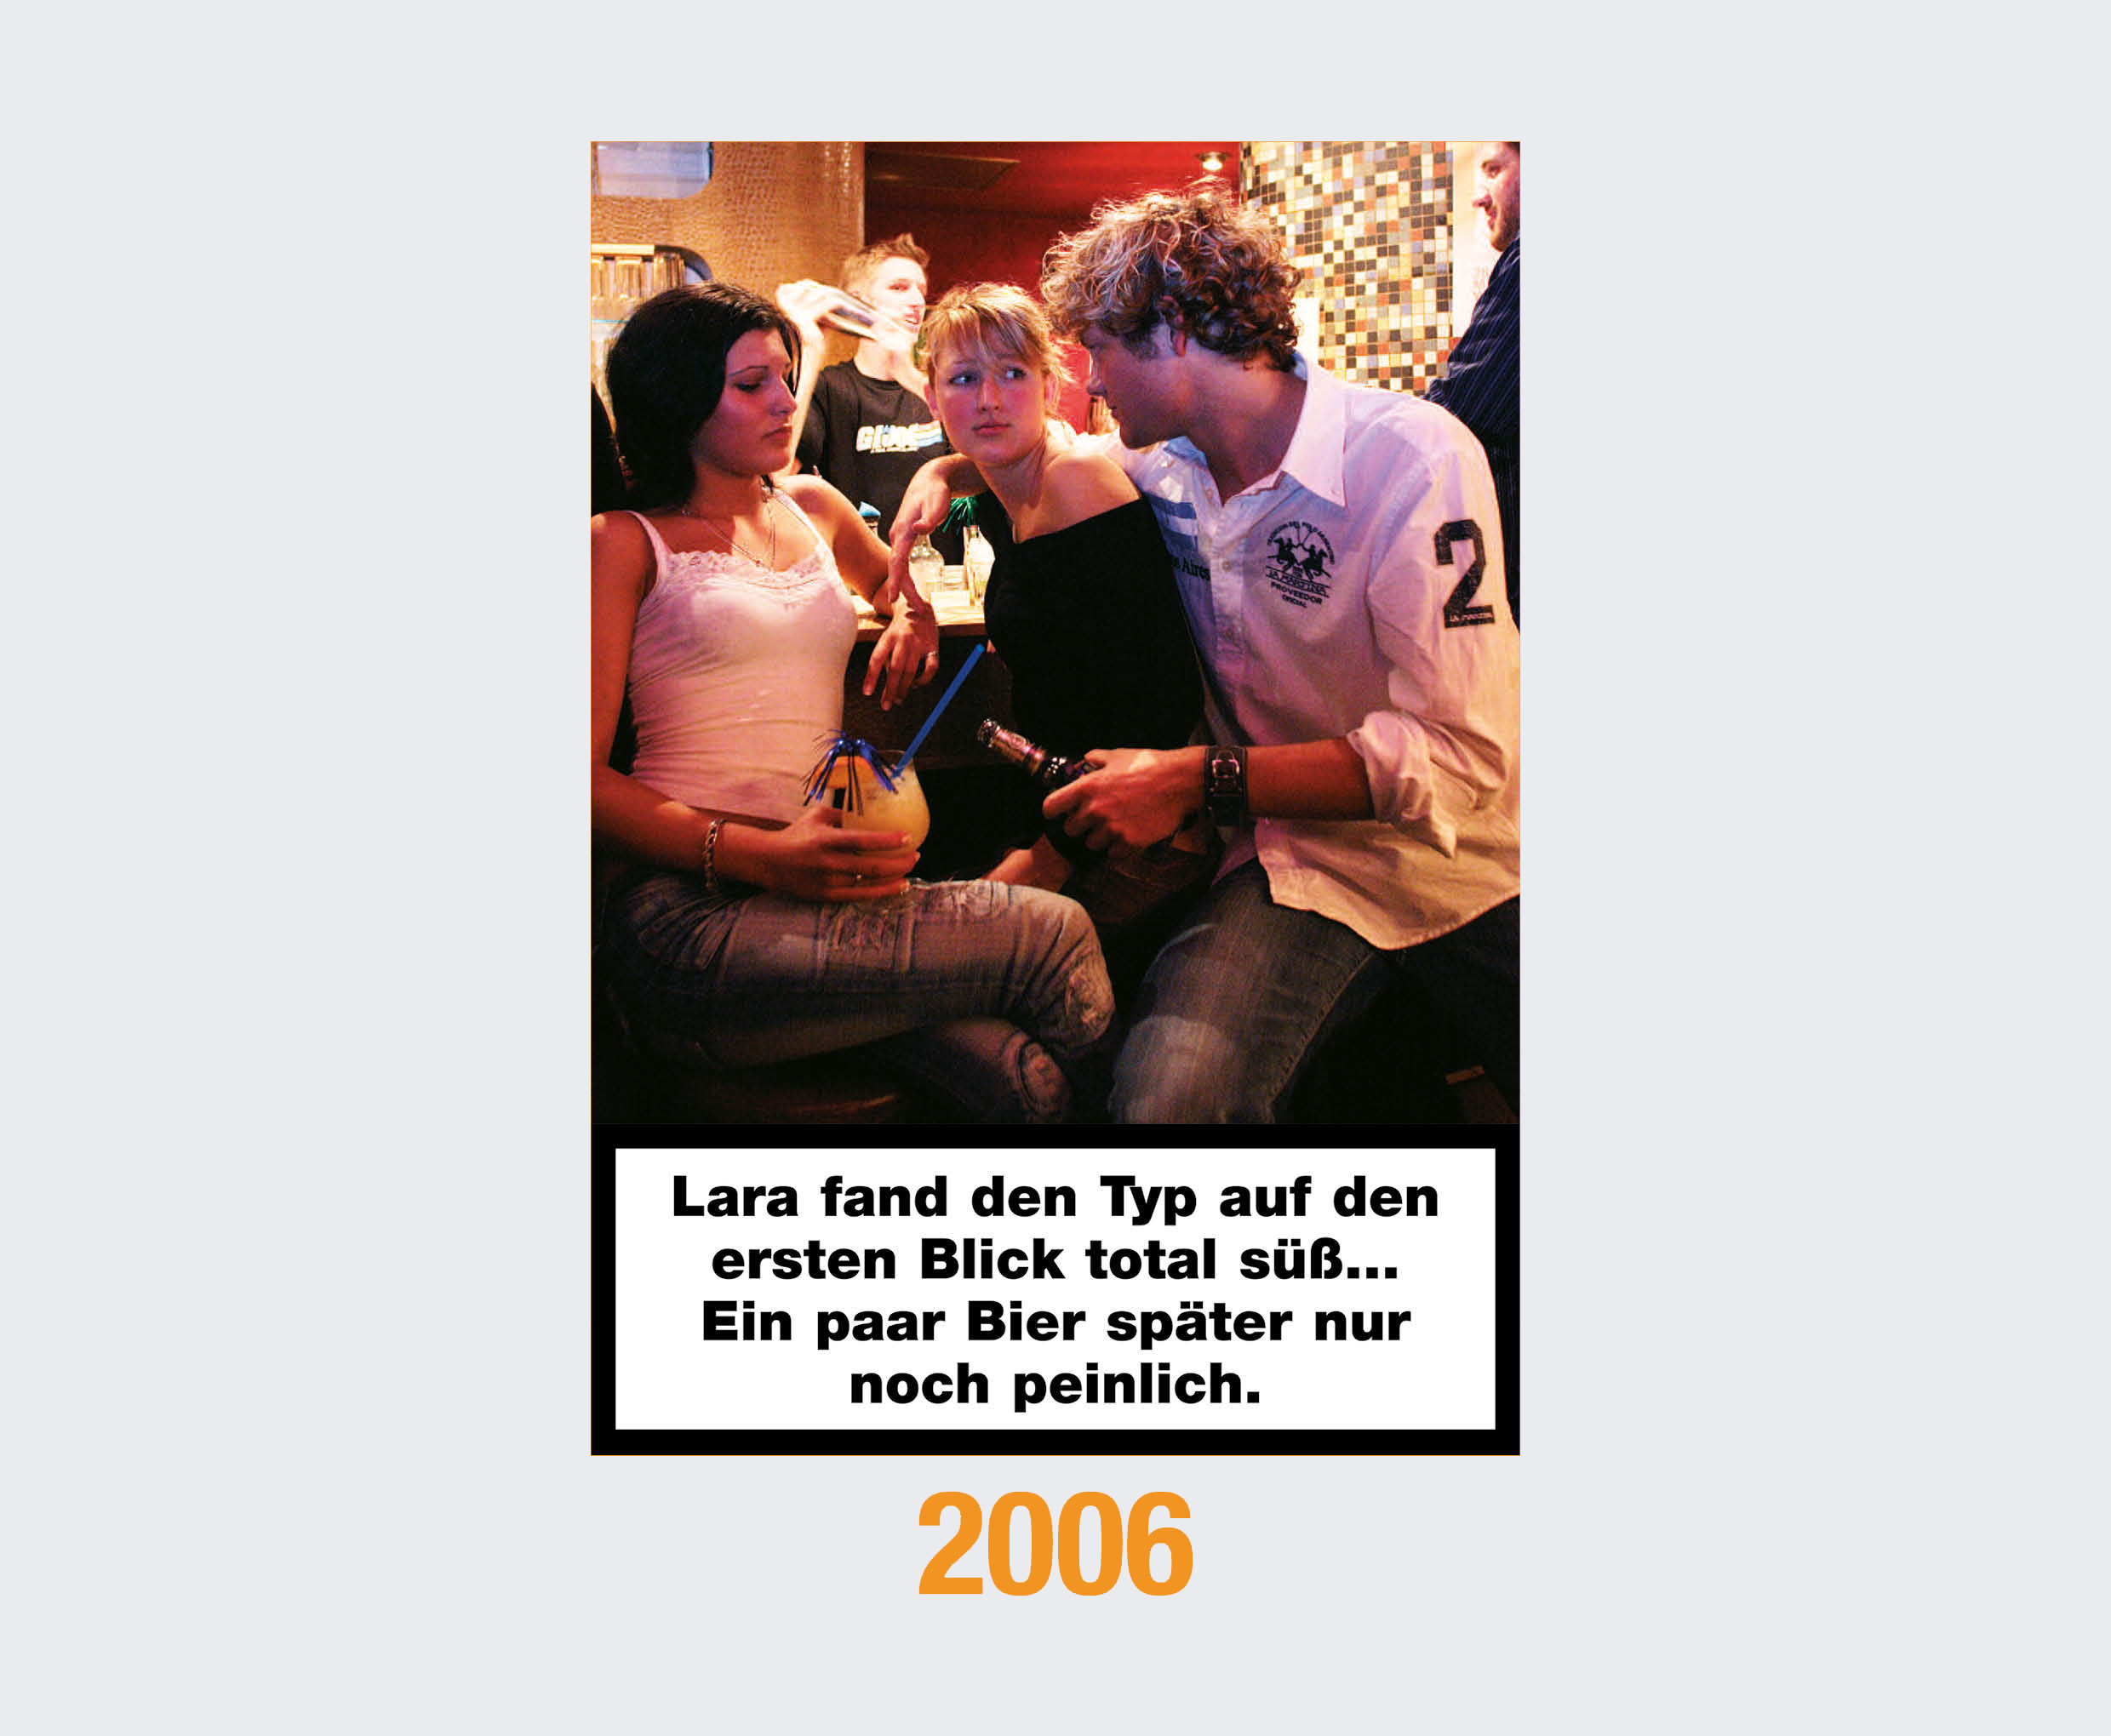 2006: Lara fand den Typ auf den ersten Blick total süß ... Ein paar Bier später nur noch peinlich. 